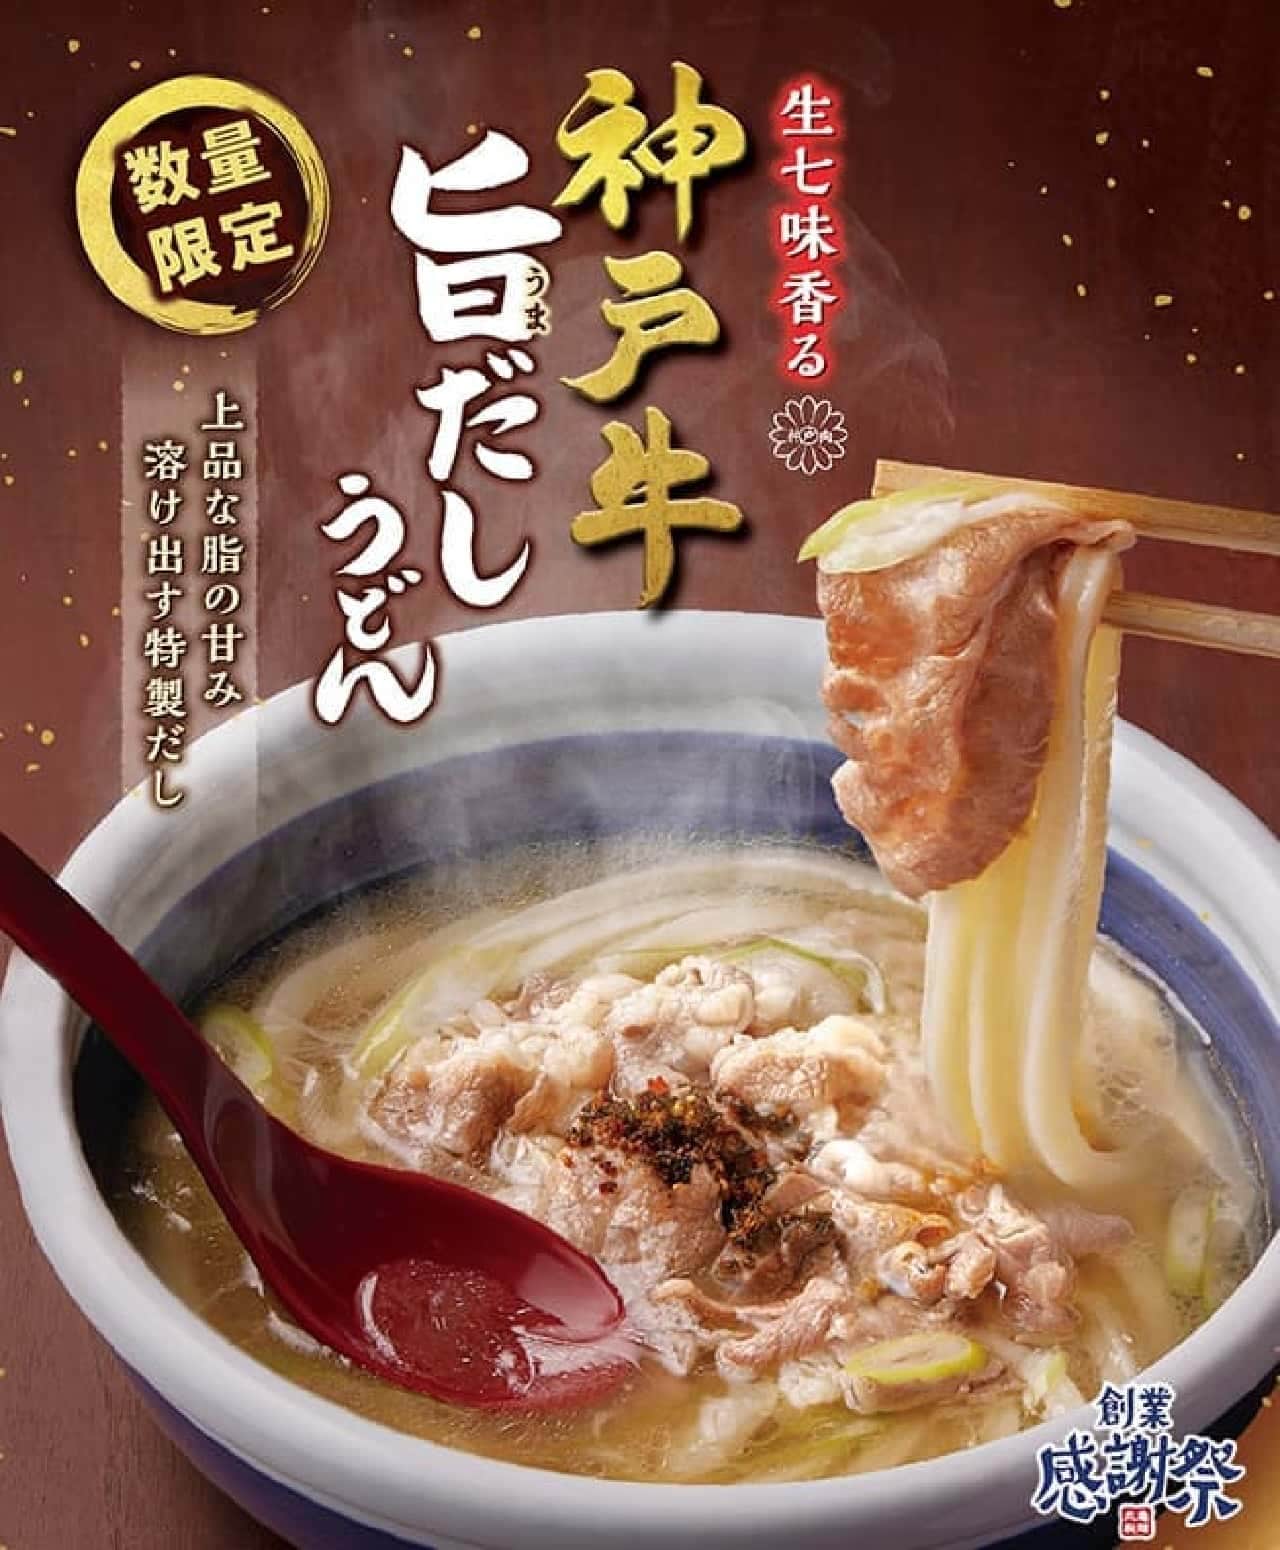 丸亀製麺 創業感謝祭 第4弾「生七味香る 神戸牛旨だしうどん」